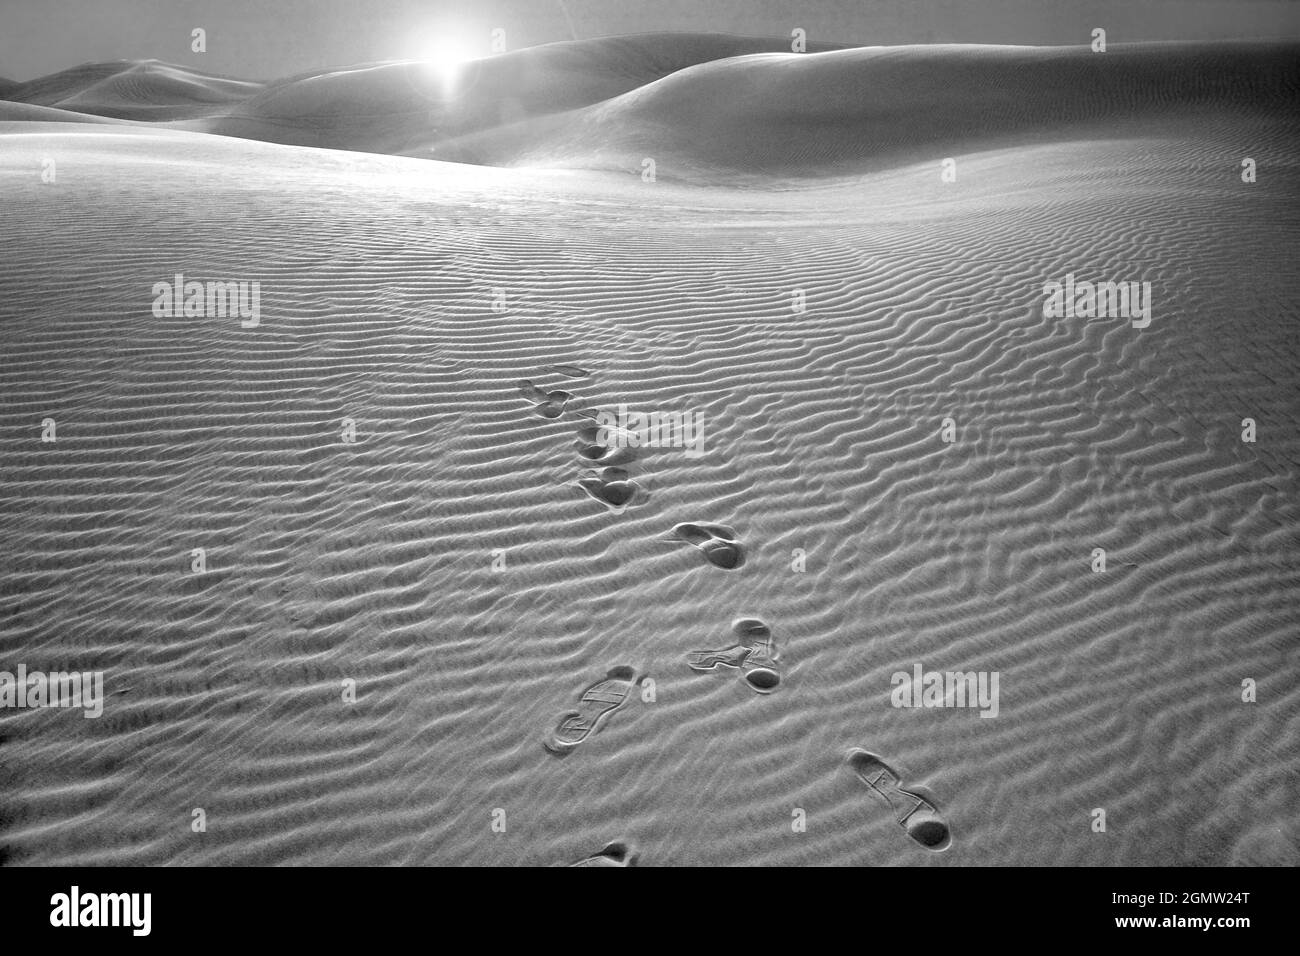 Dubaï, Émirats arabes Unis - 6 février 2008 les sables vifs des déserts en dehors de Dubaï, Émirats arabes Unis offrent une beauté féroce. Malheureusement, u Banque D'Images